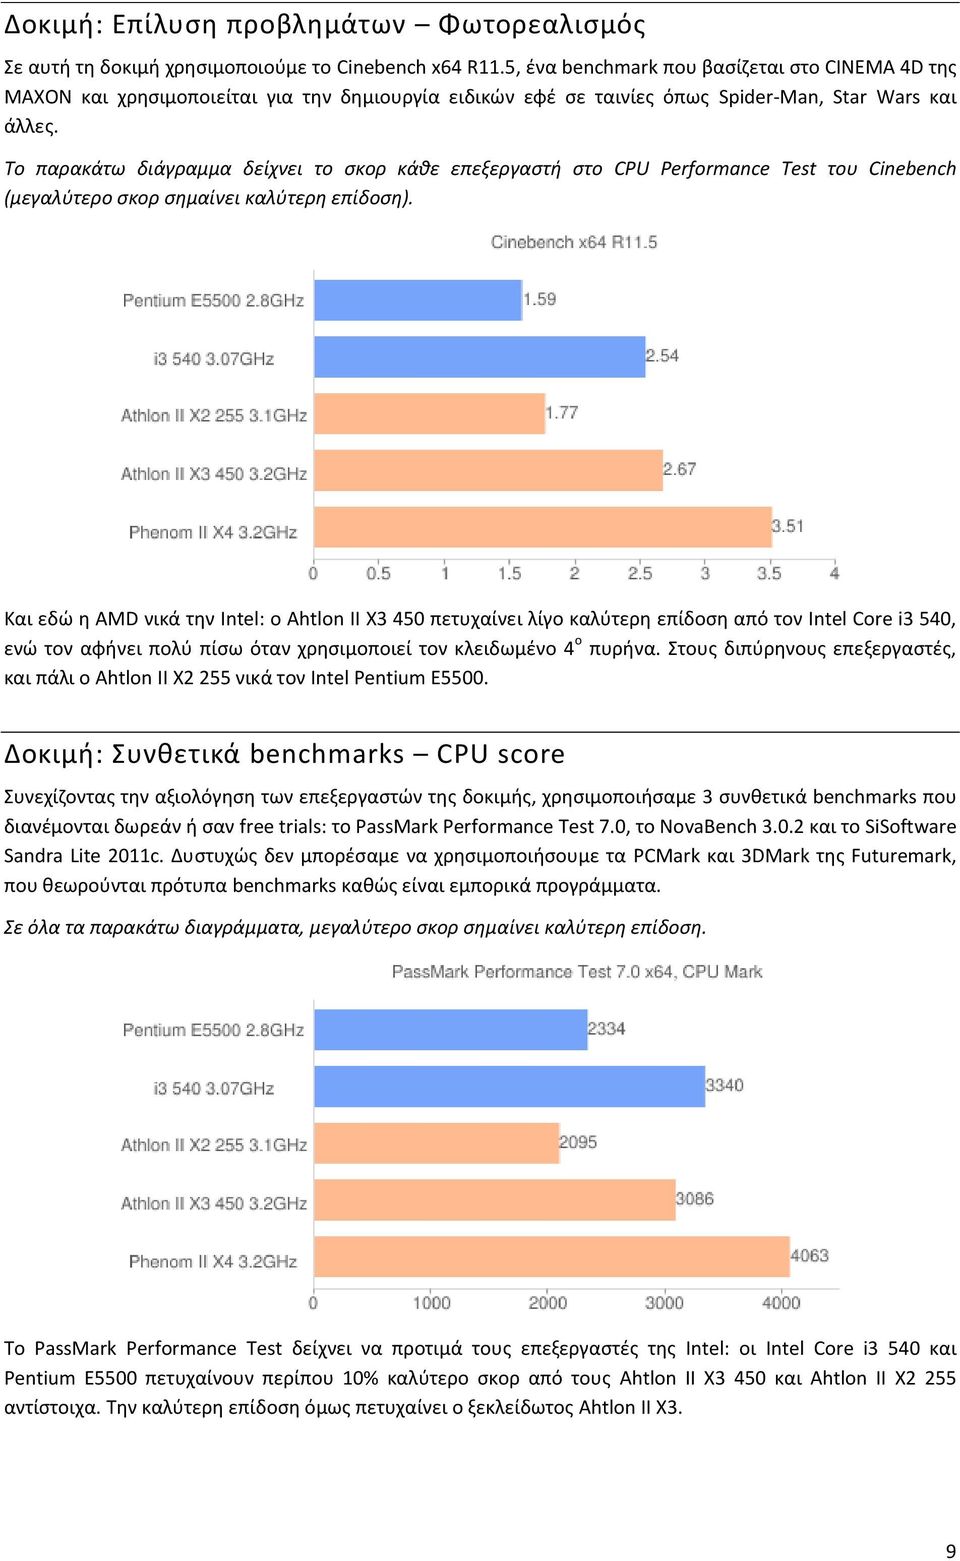 Το παρακάτω διάγραμμα δείχνει το ςκορ κάκε επεξεργαςτι ςτο CPU Perfrmance Test του Cinebench (μεγαλφτερο ςκορ ςθμαίνει καλφτερθ επίδοςθ).